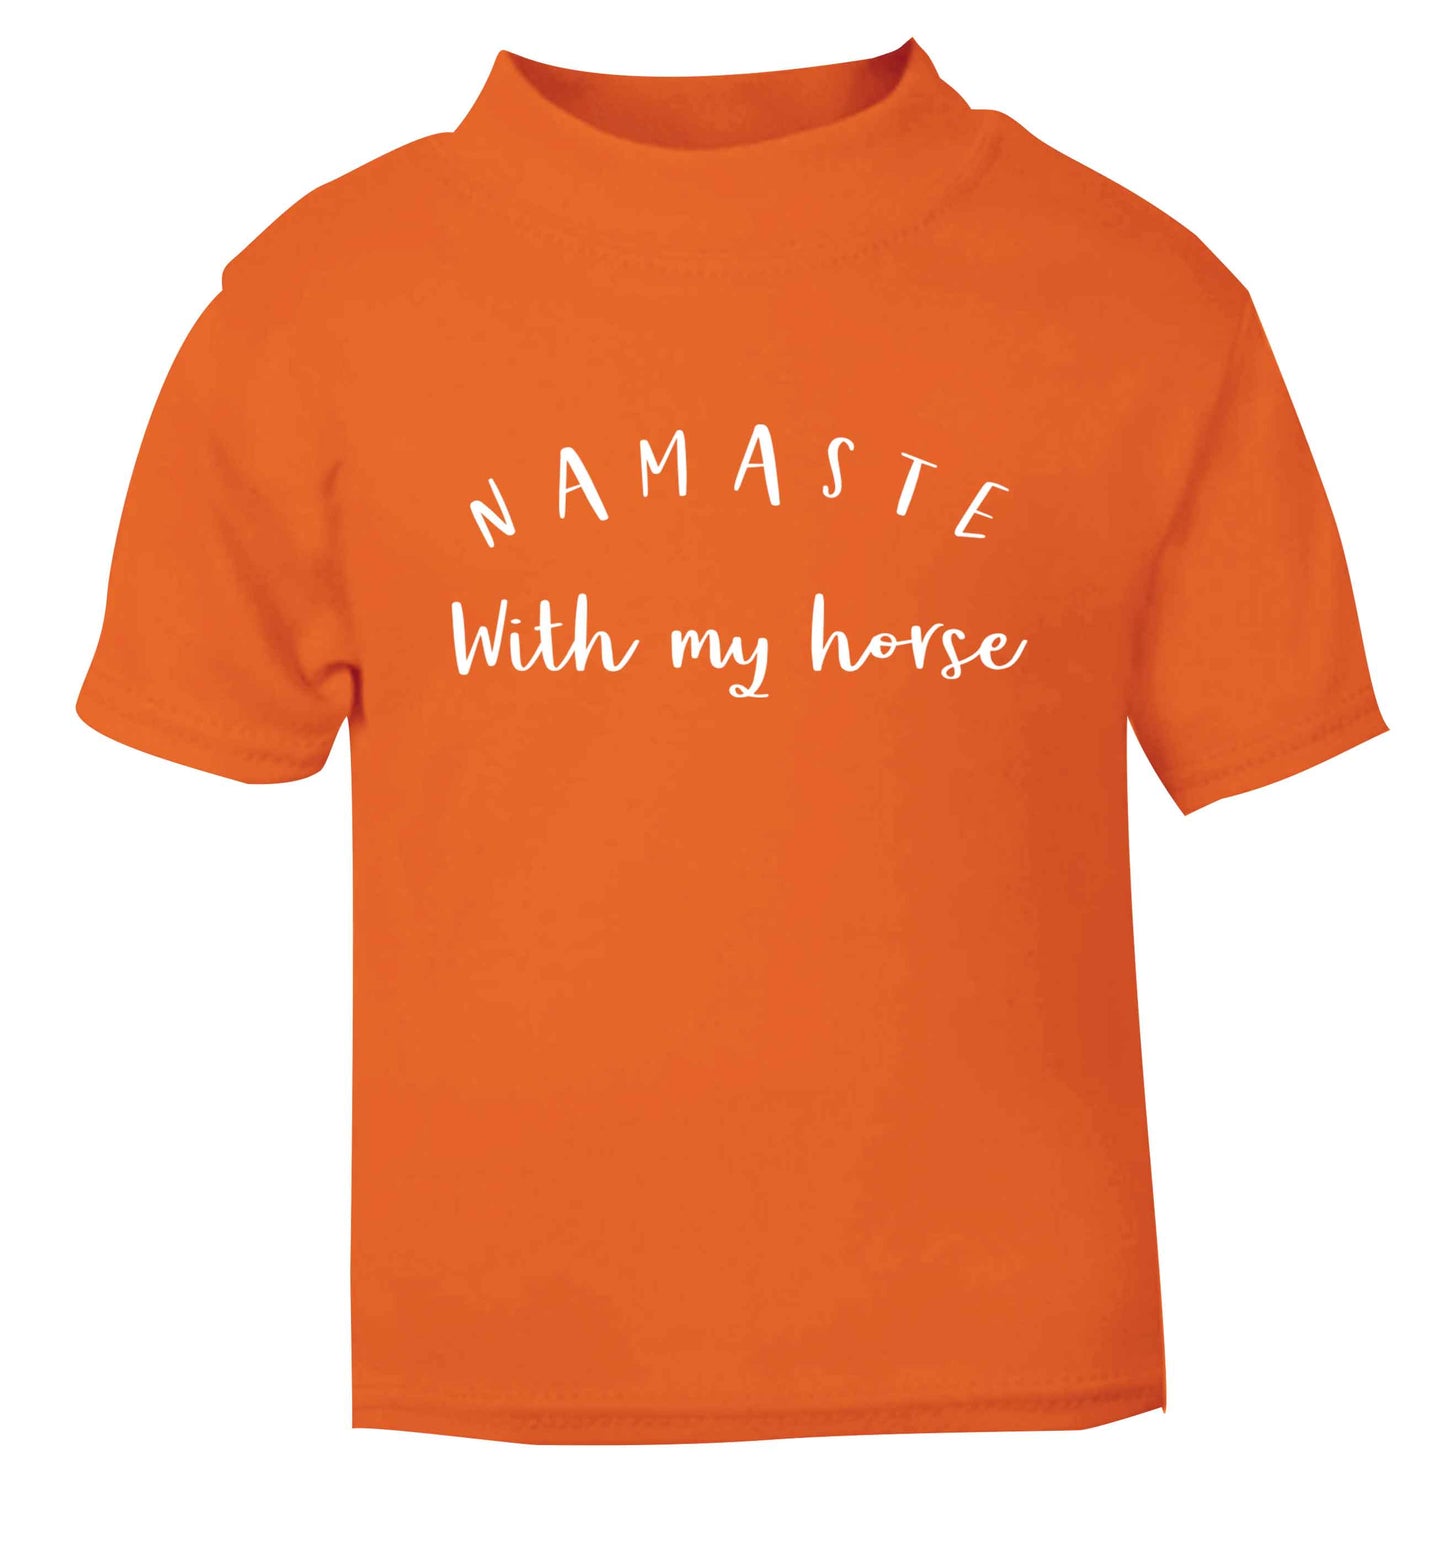 Namaste with my horse orange baby toddler Tshirt 2 Years